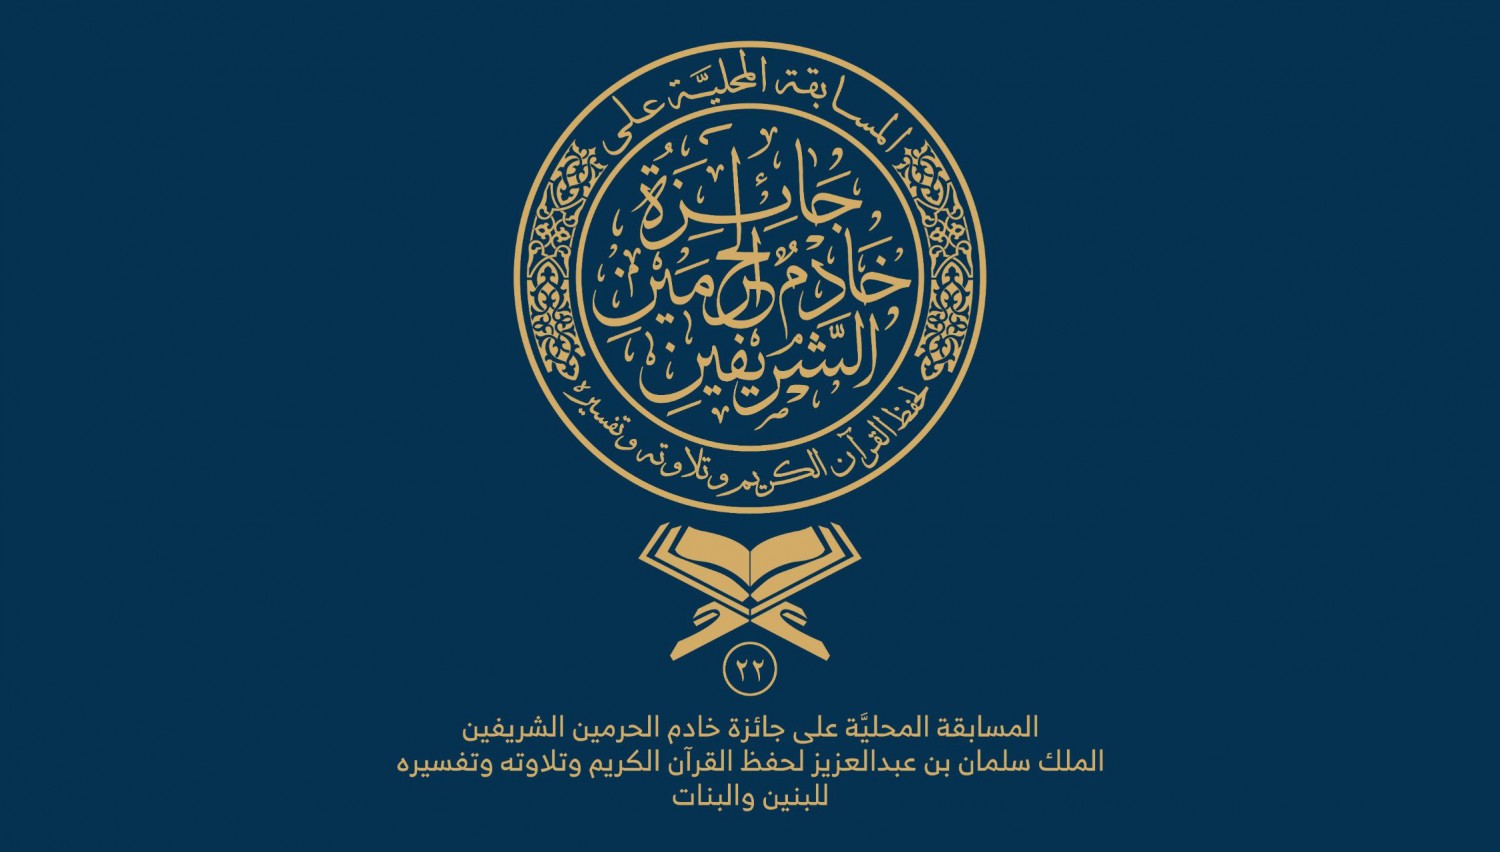 9 2 - «الشؤون الإسلامية» تطلق وسماً في «تويتر» تزامناً مع انطلاقة مسابقة الملك سلمان لحفظ القرآن